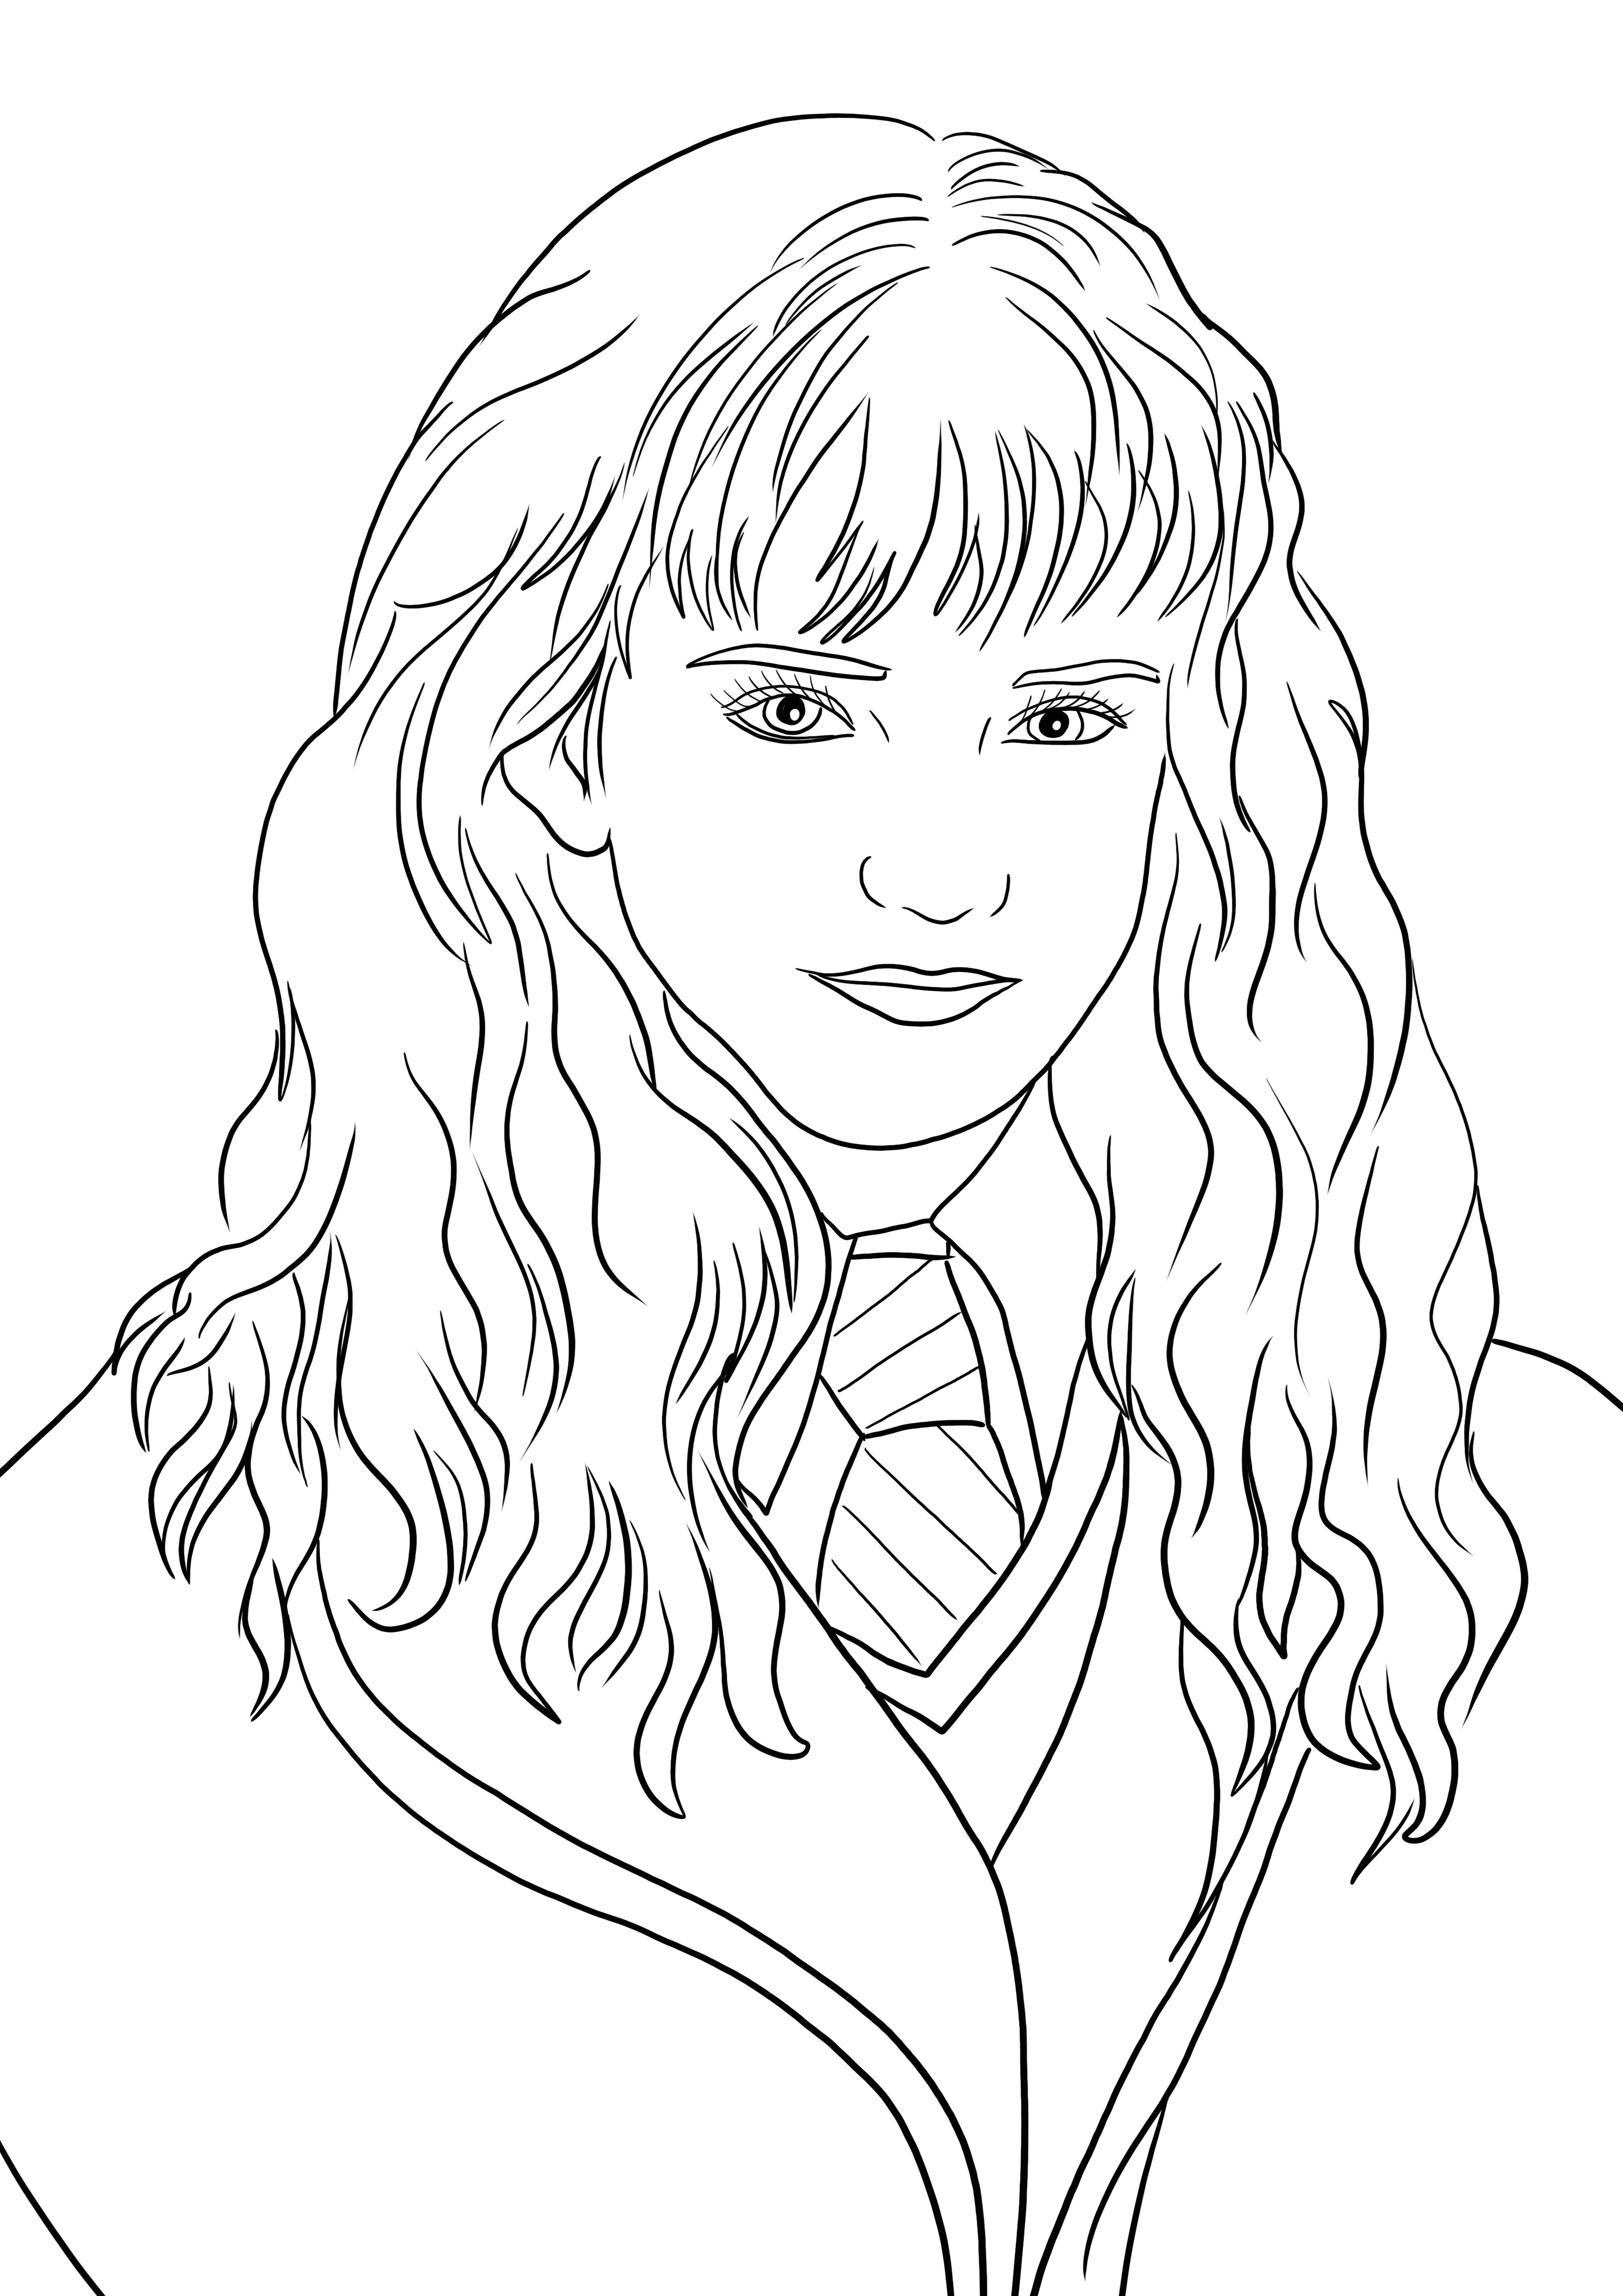 El imprimible gratis de Hermione Granger lista para colorear y divertirse